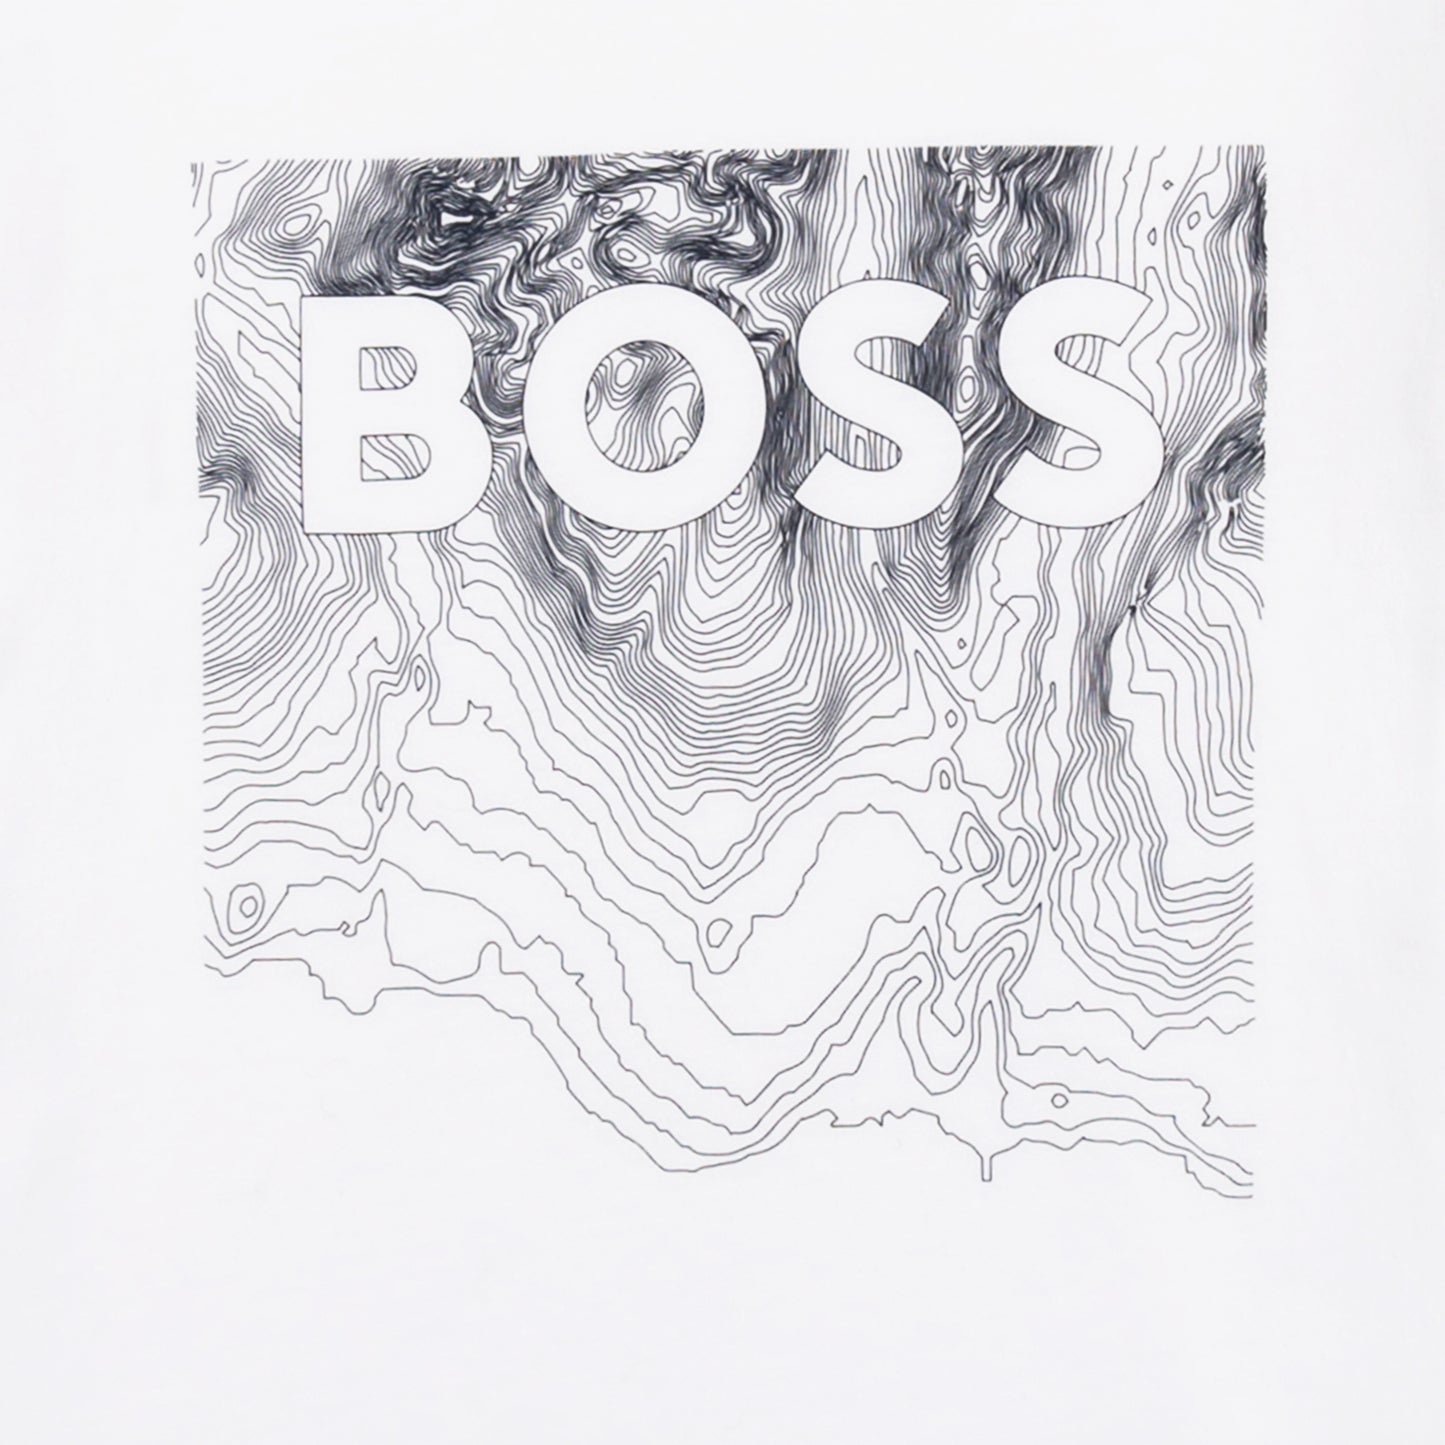 Hugo Boss Boys T-Shirt w/Graphic_ White J25N35-10B